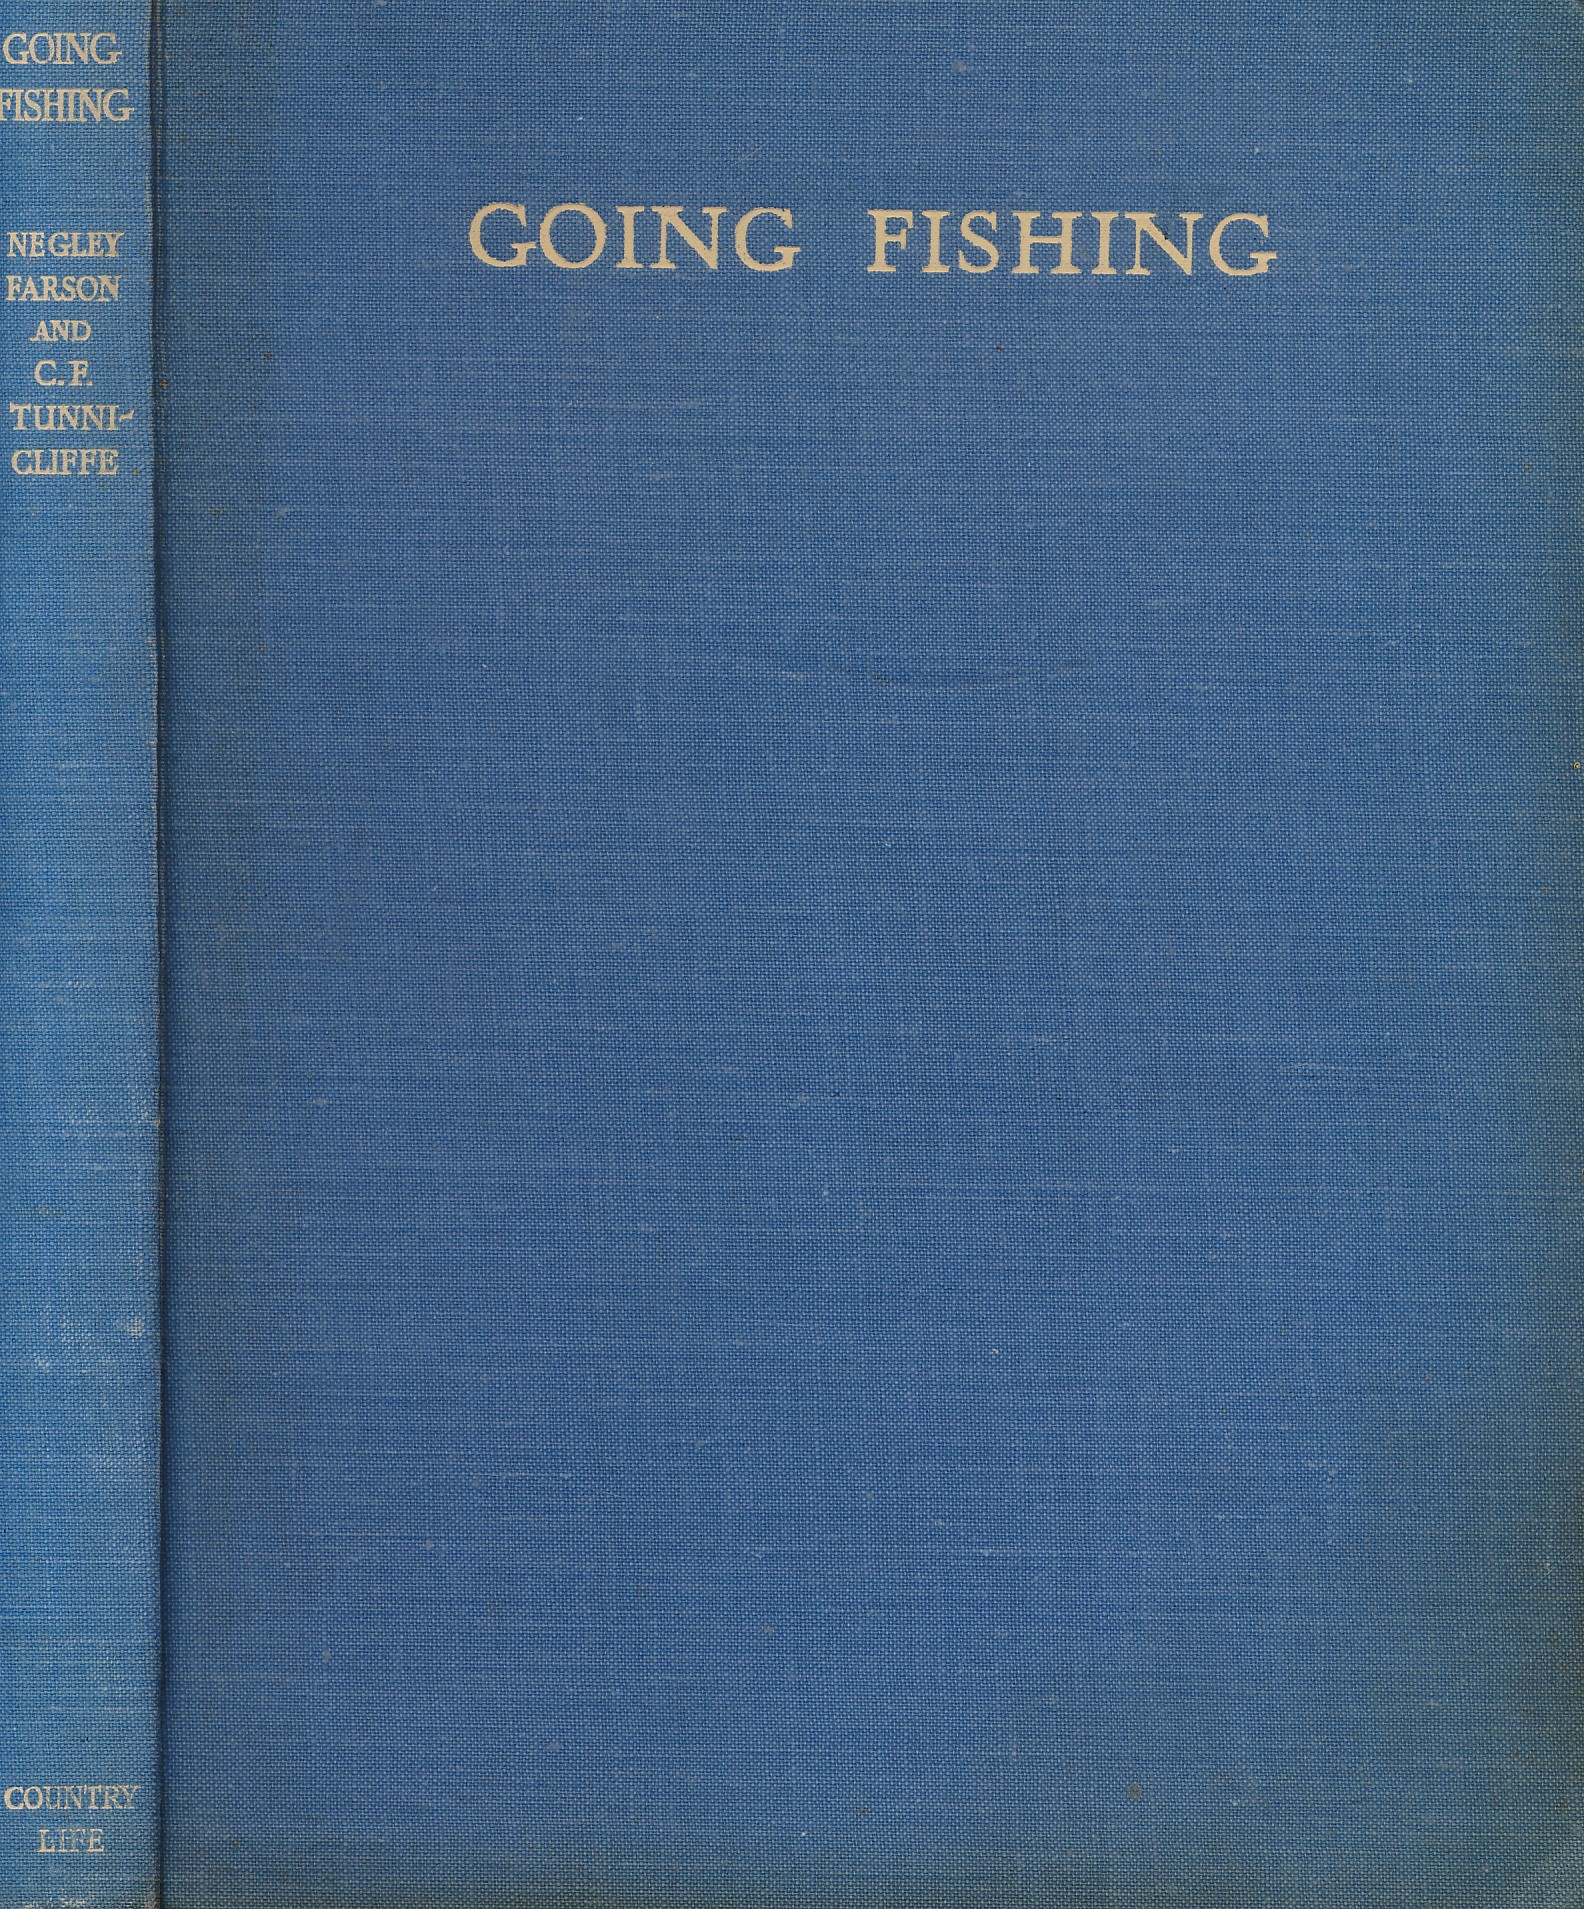 Going Fishing. 1942.